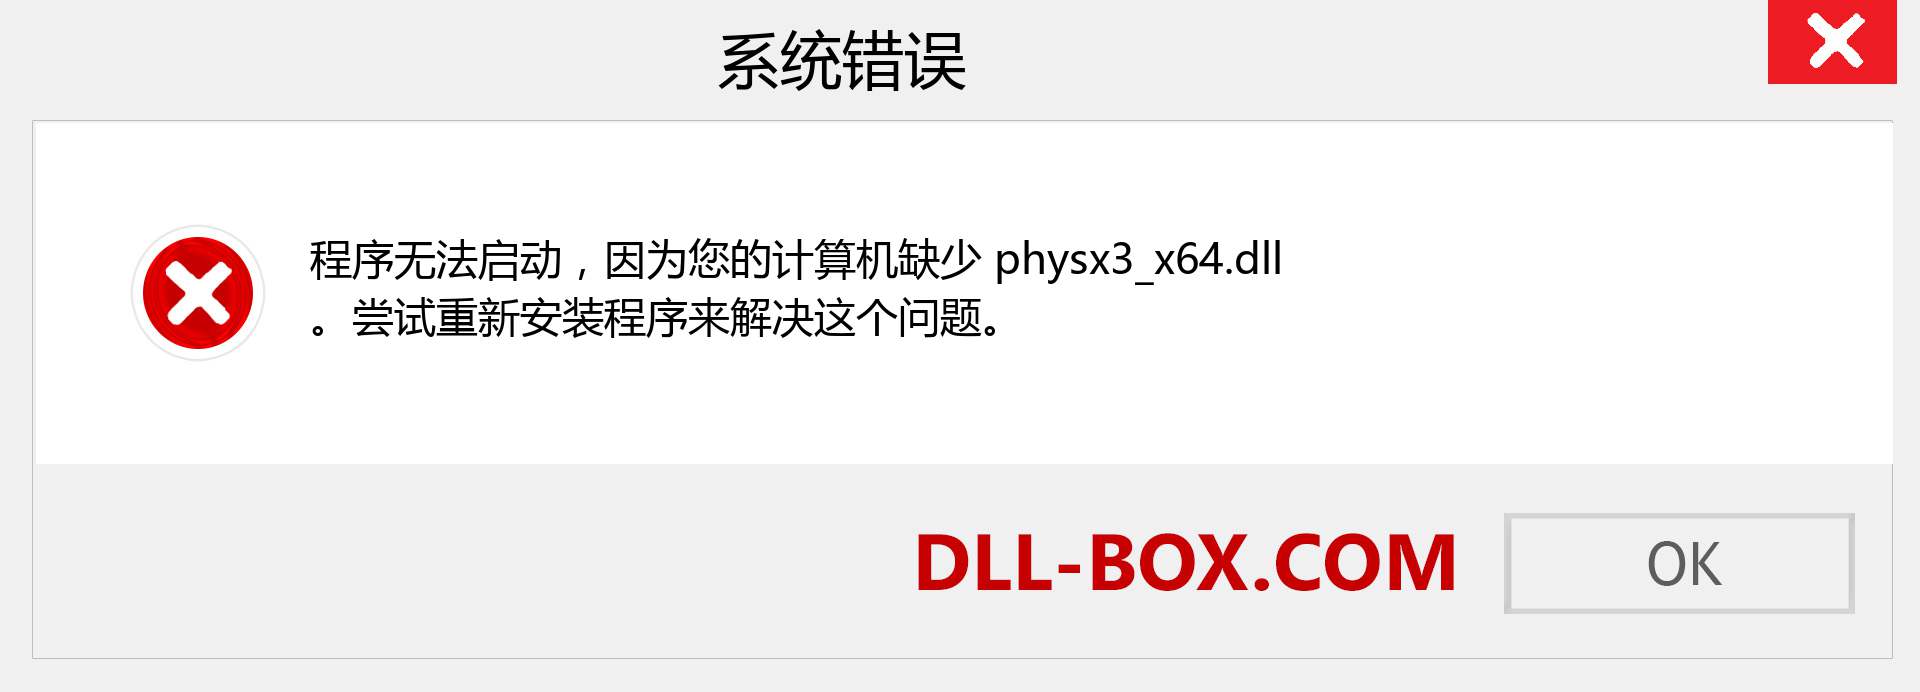 physx3_x64.dll 文件丢失？。 适用于 Windows 7、8、10 的下载 - 修复 Windows、照片、图像上的 physx3_x64 dll 丢失错误